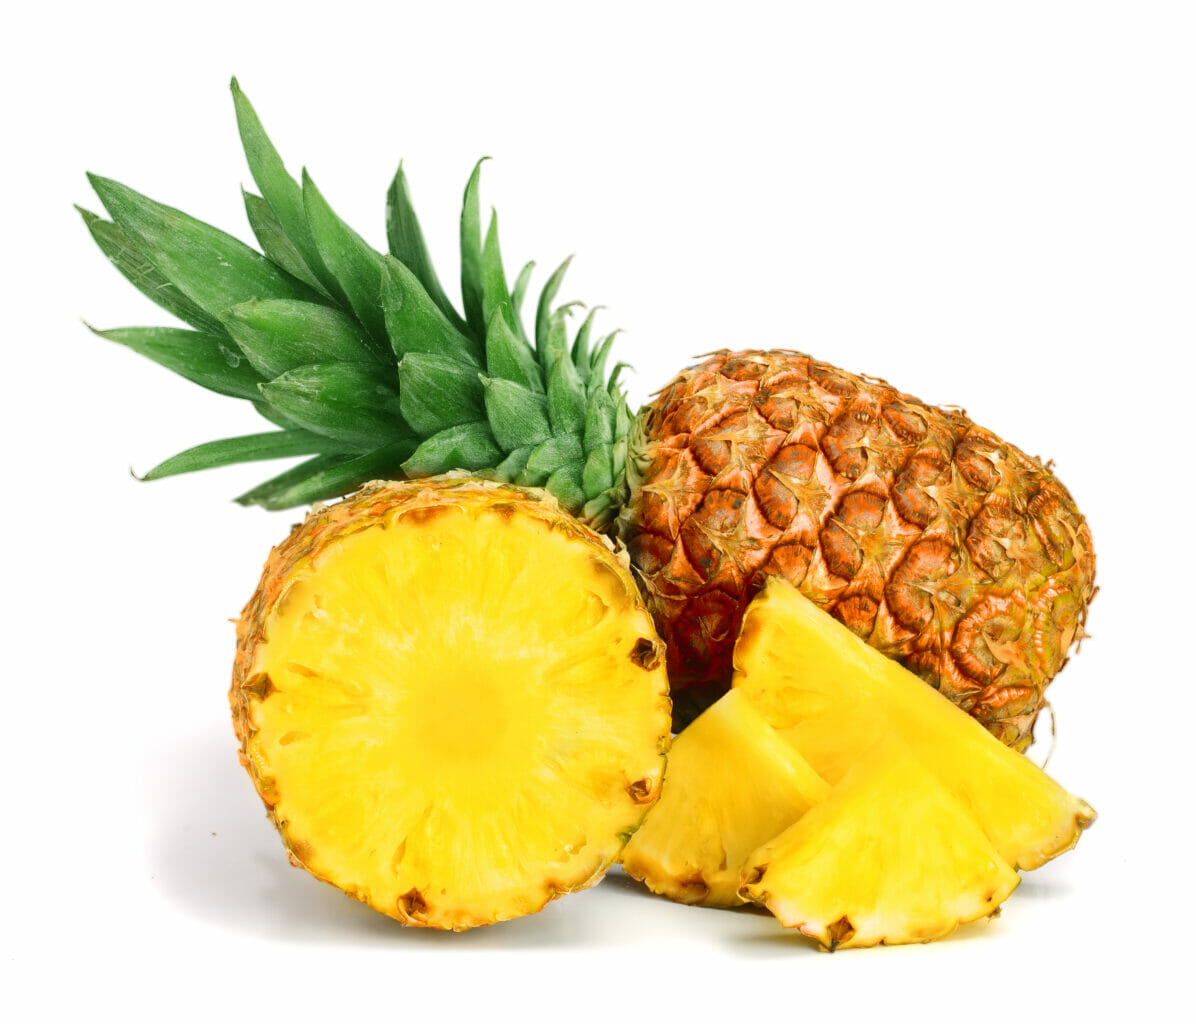 Ananas Kinderwusch Einnistung Bromelain Pimpmyeggs Vitaminc Mangan Unfruchtbar Familienplanung